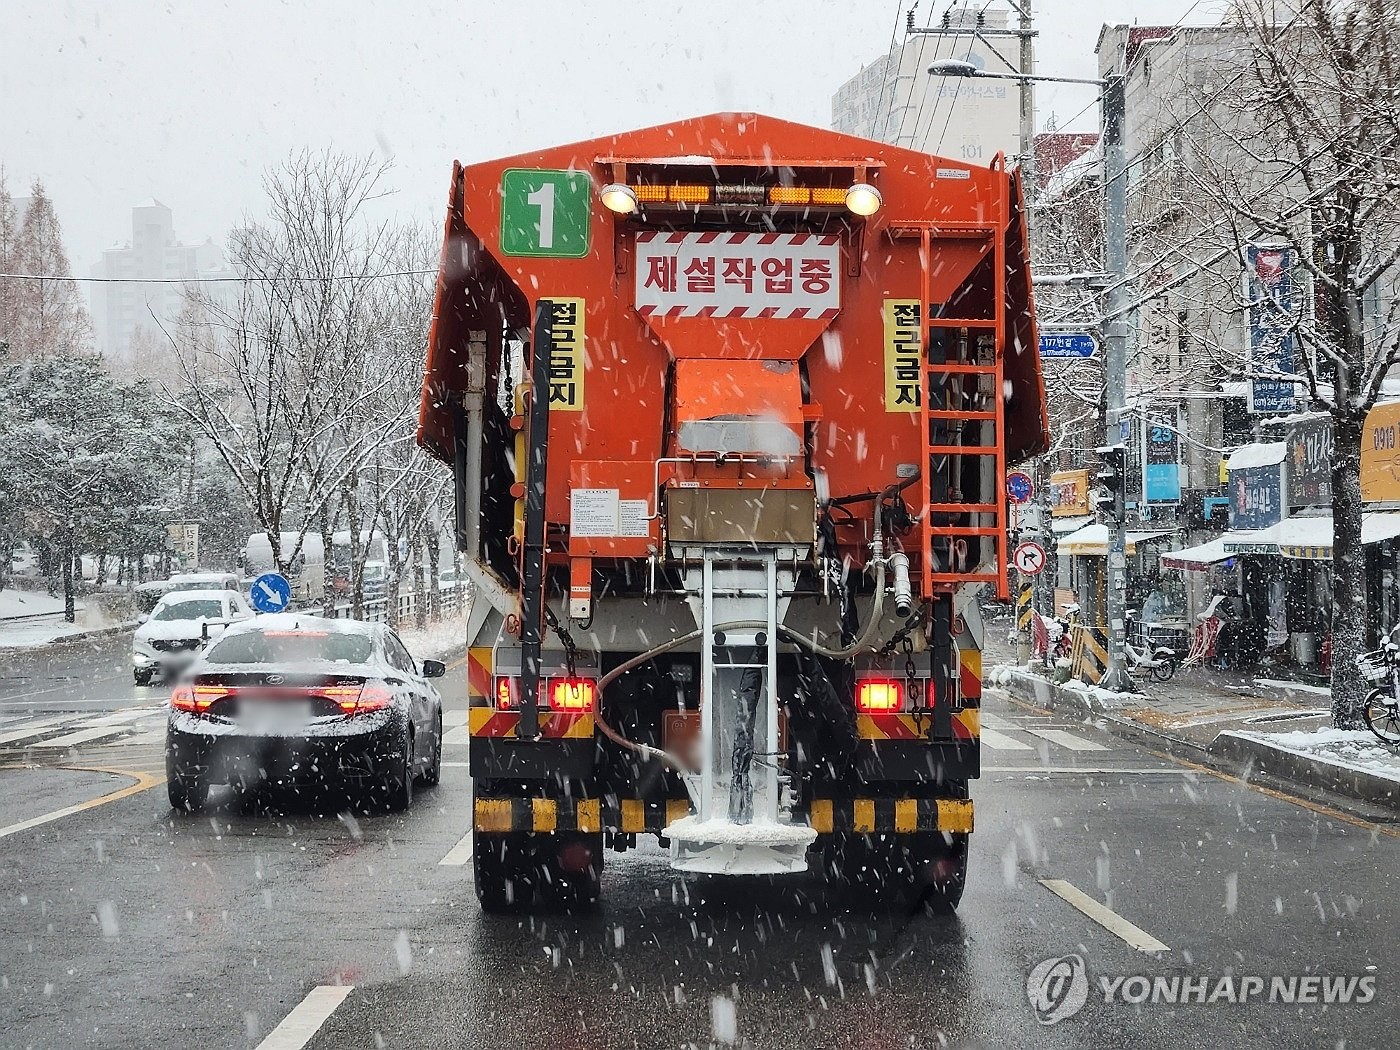 Chùm ảnh: Hàn Quốc đóng băng trong sóng lạnh Bắc Cực, băng tuyết trắng xóa bao phủ nhiều thành phố- Ảnh 12.